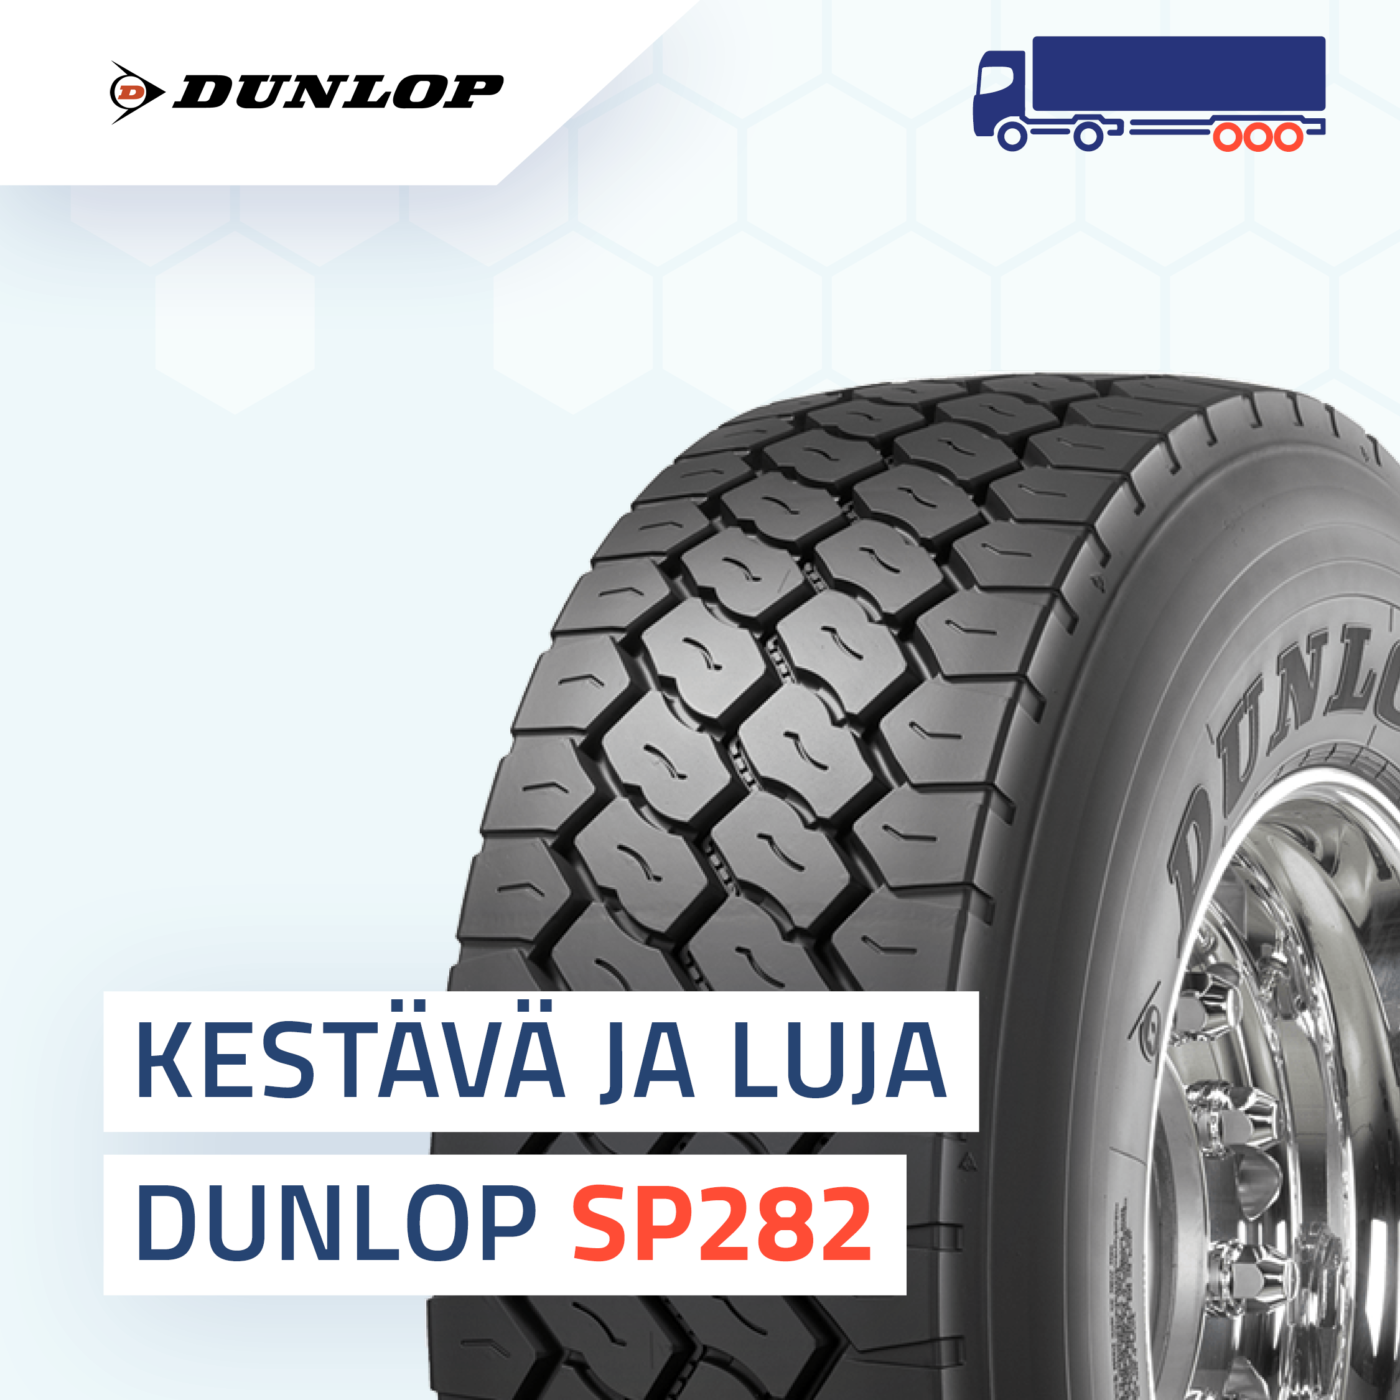 Dunlop SP282